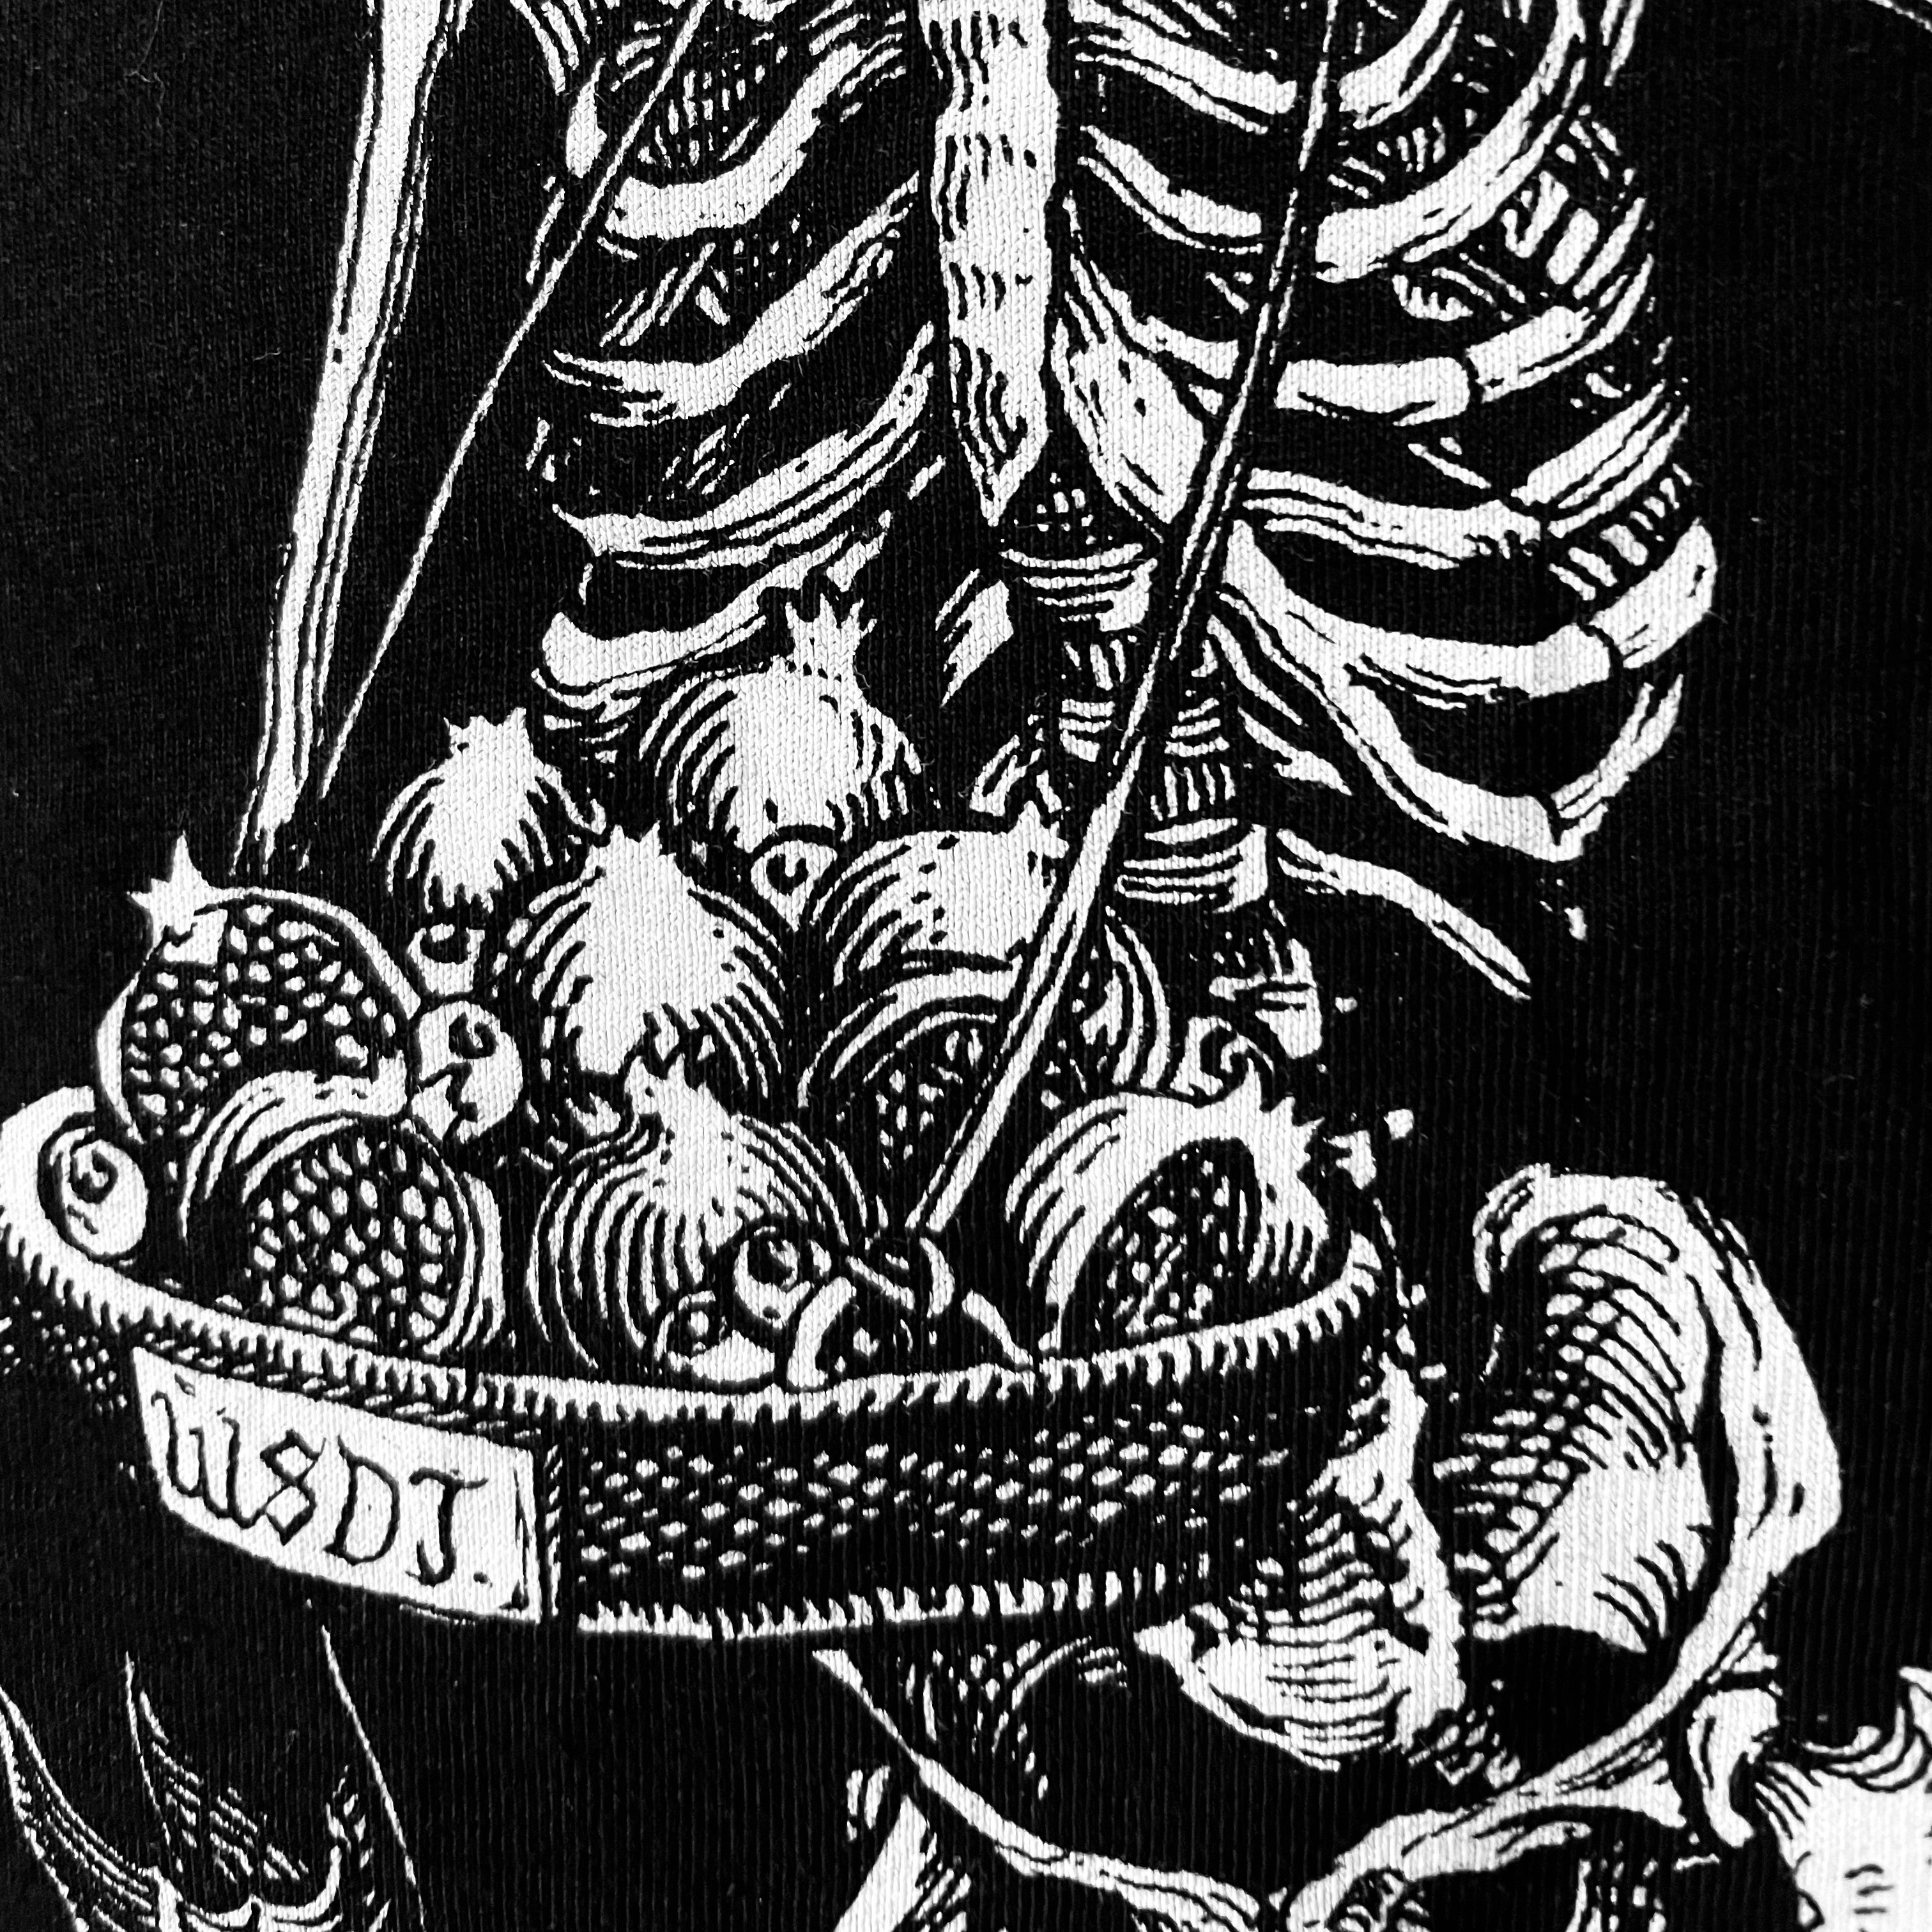 Skeleton Peddler T-Shirt - Haus Nostromo x Wir Sind Die Toten - Haus Nostromo